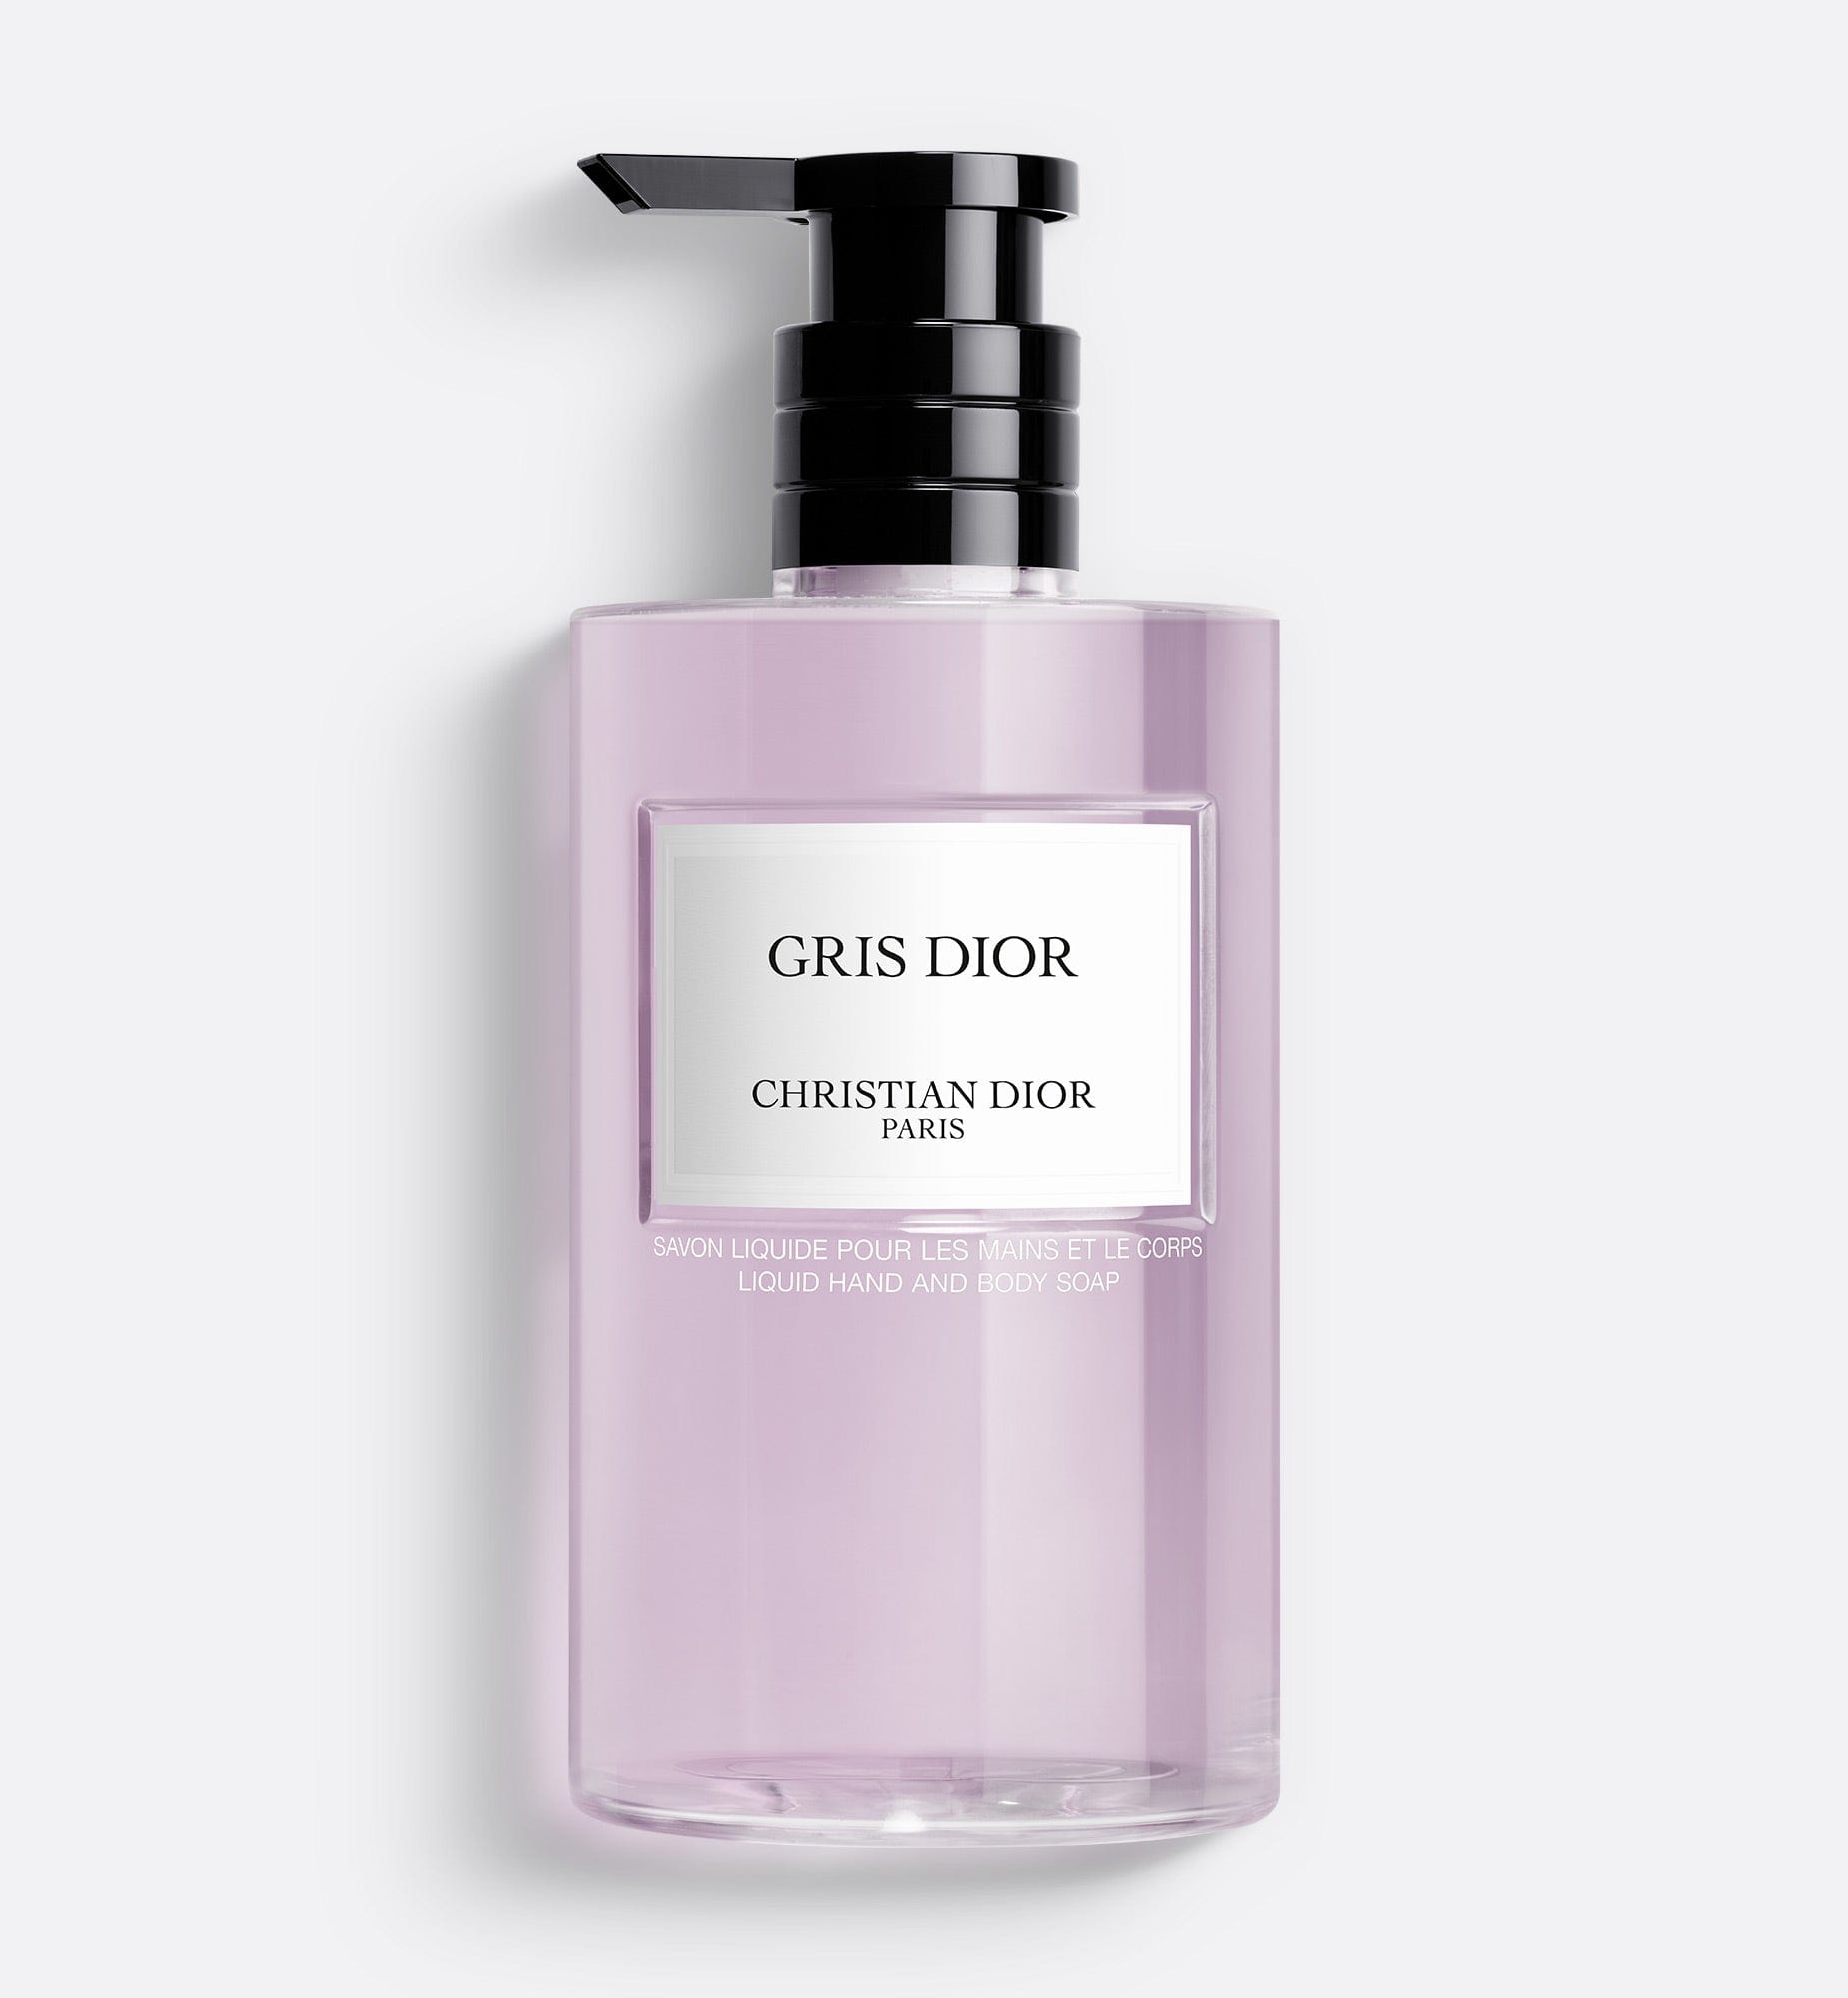 Gris Dior Liquid Soap | Liquid Hand and Body Soap